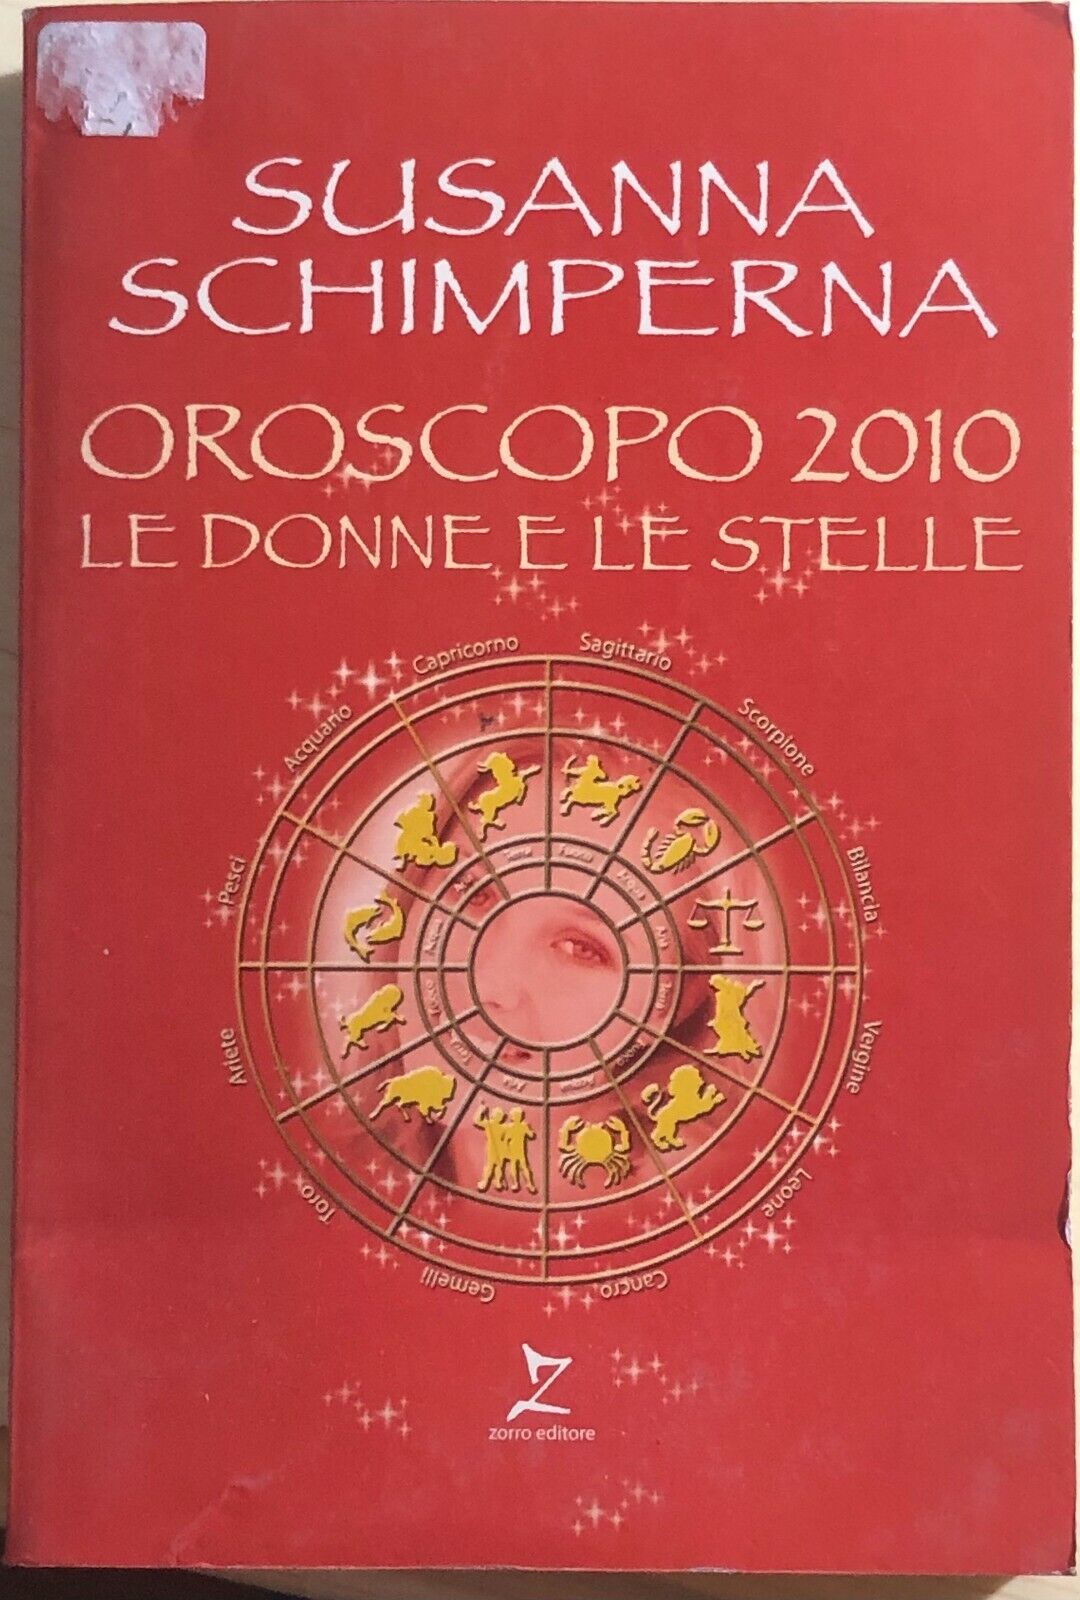 Oroscopo 2010 Le donne e le stelle di Susanna Schimperna,  2009,  Zorro Editore